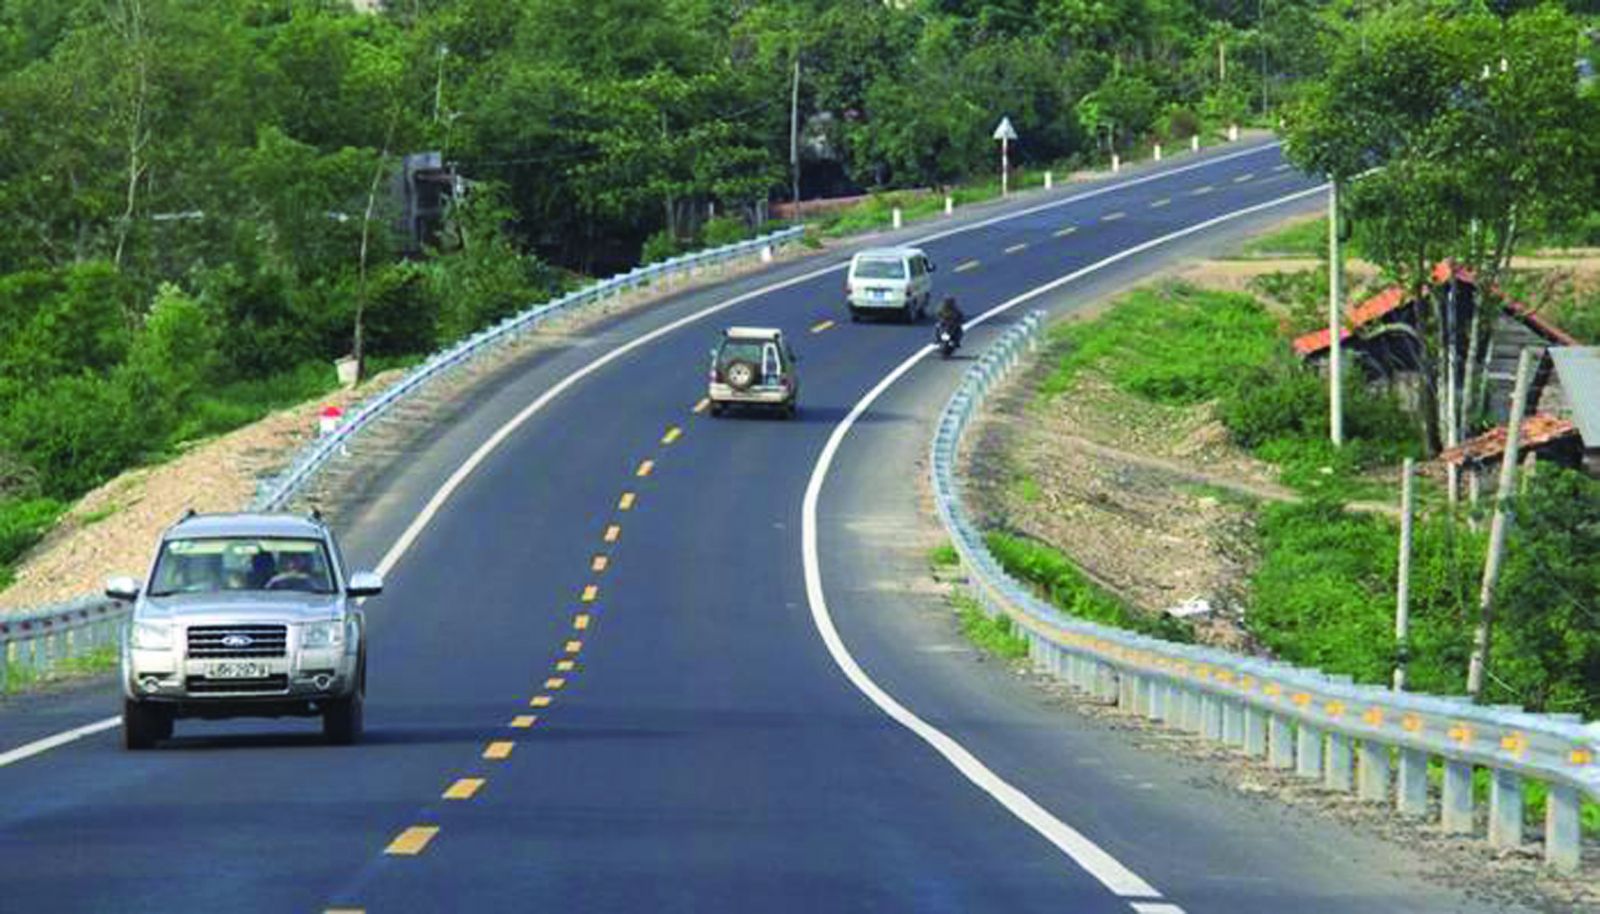  Tuyến cao tốc Gia Nghĩa (Đắk Nông) - Chơn Thành (Bình Phước) kết nối giao thông liên vùng Tây Nguyên, Đông Nam Bộ và TP.HCM, tạo động lực để Bình Phước phát triển.